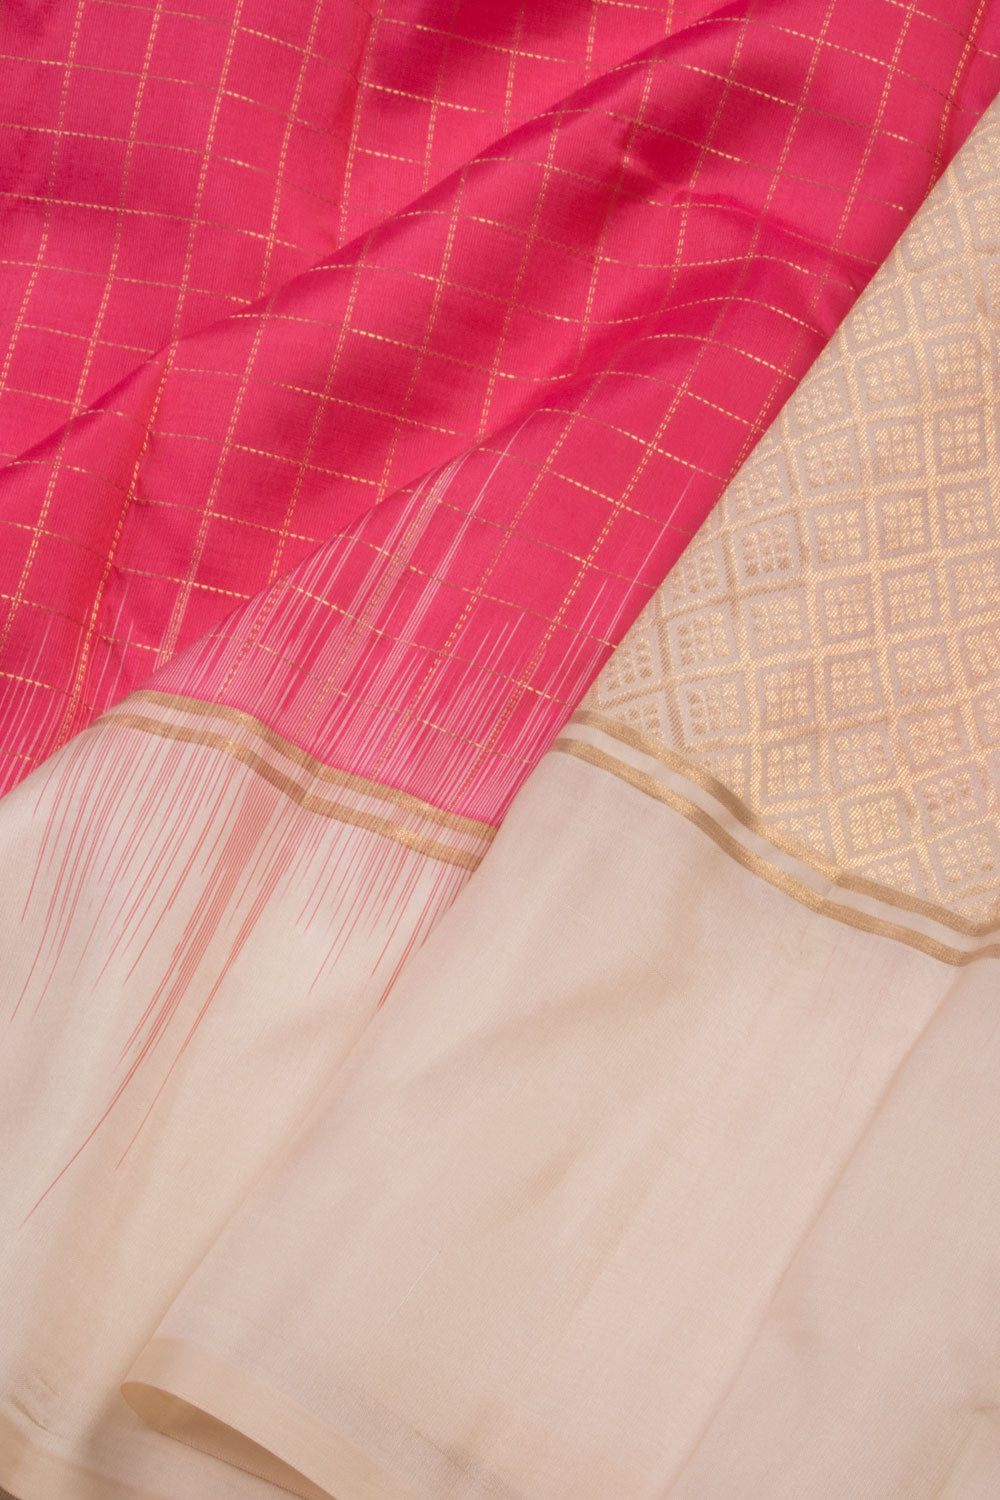 Pink Handloom Kanjivaram Silk Saree 10069153 - Avishya